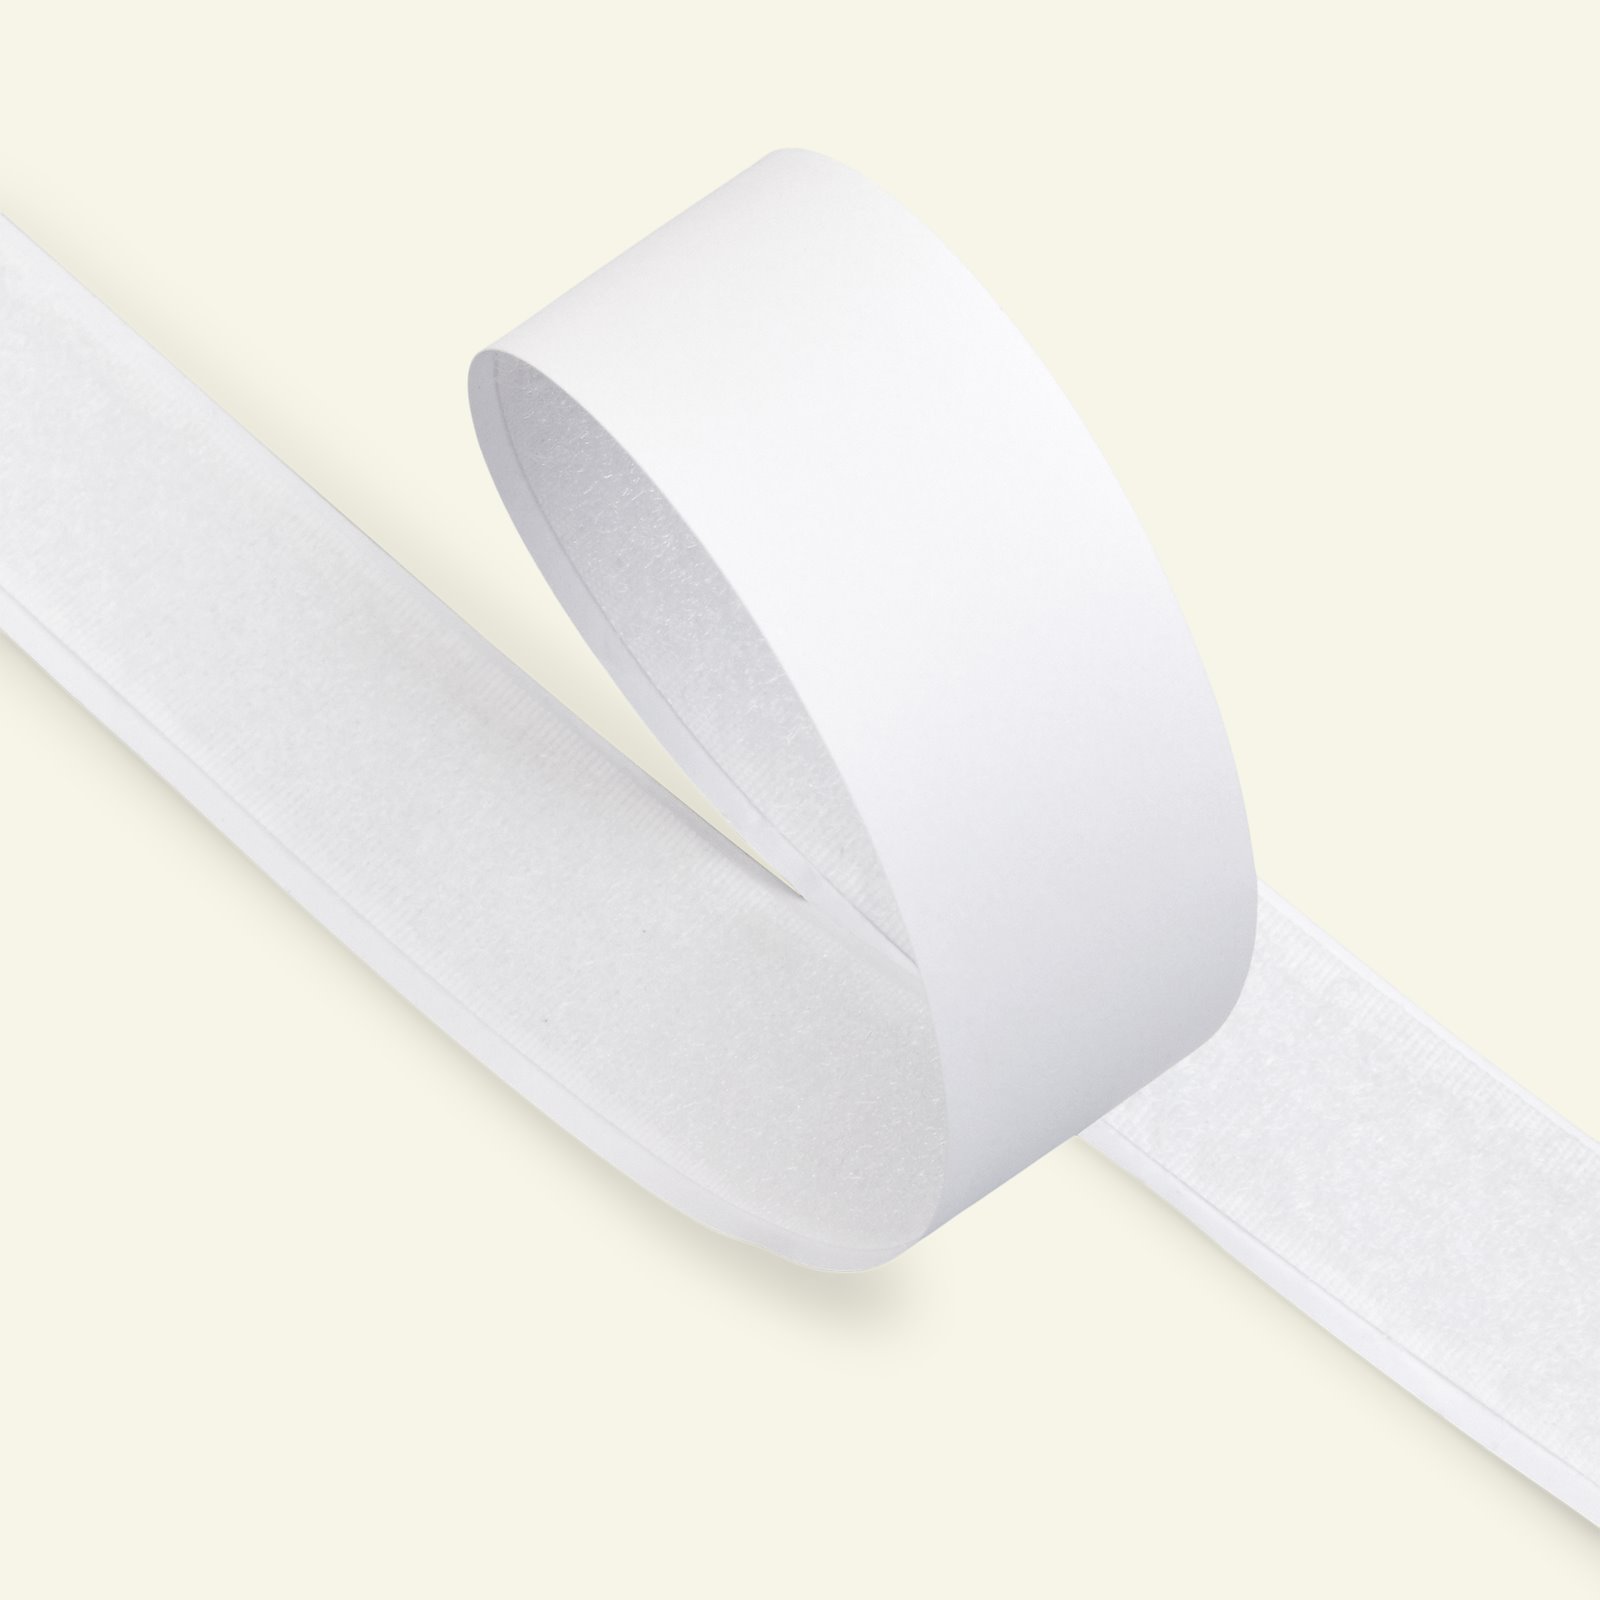 Self-adhesive Loop tape 20mm white 25m 30202_pack